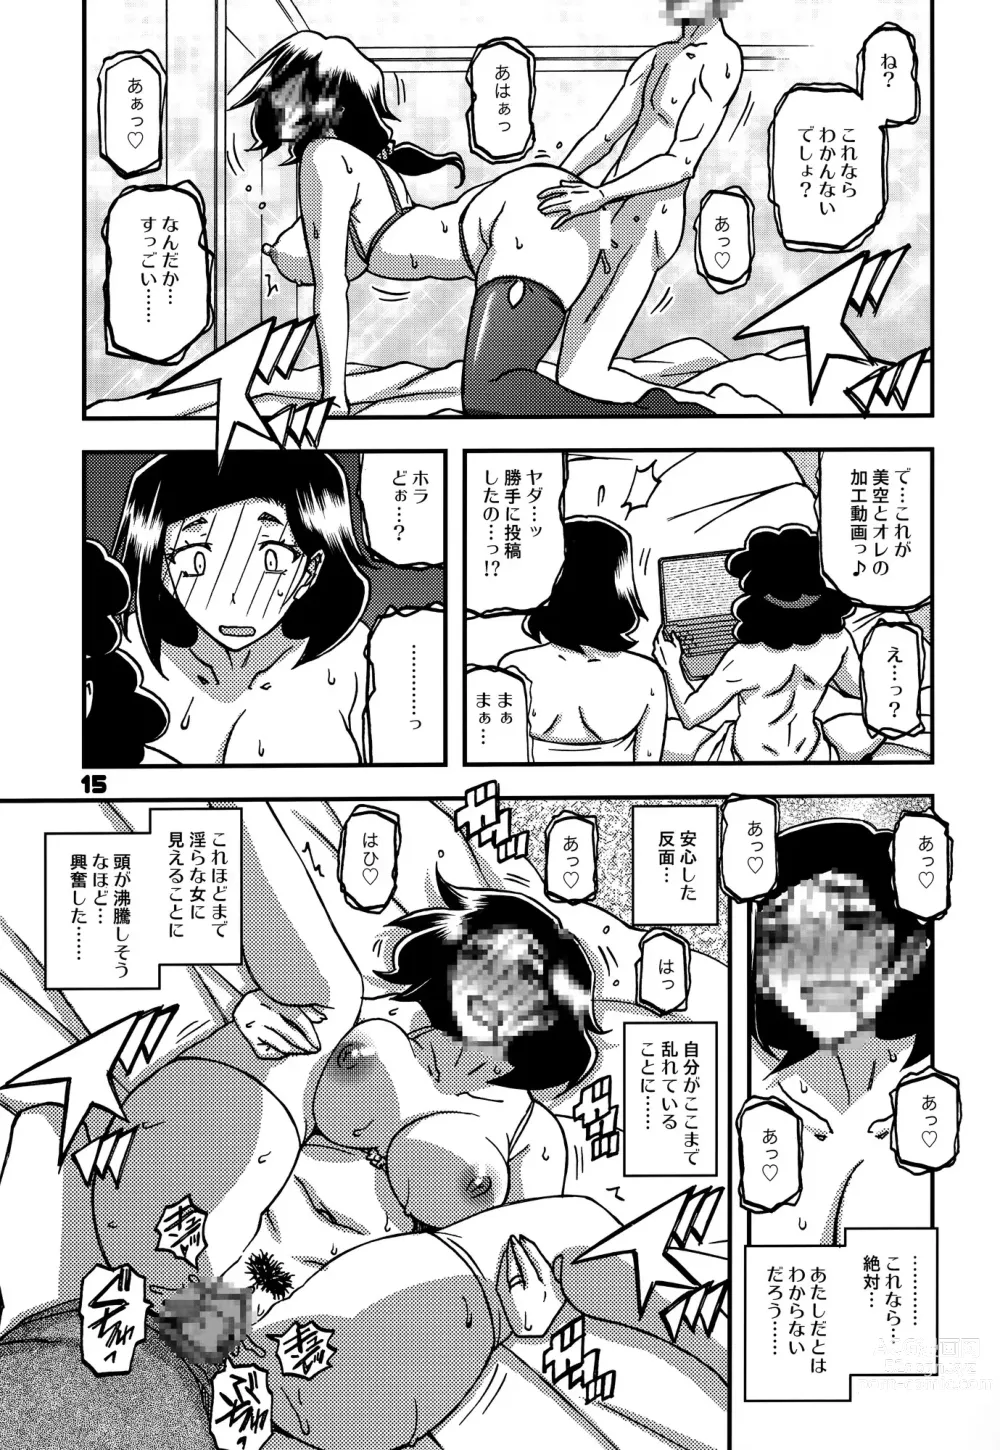 Page 14 of doujinshi Akebi no Mi - Misora AFTER